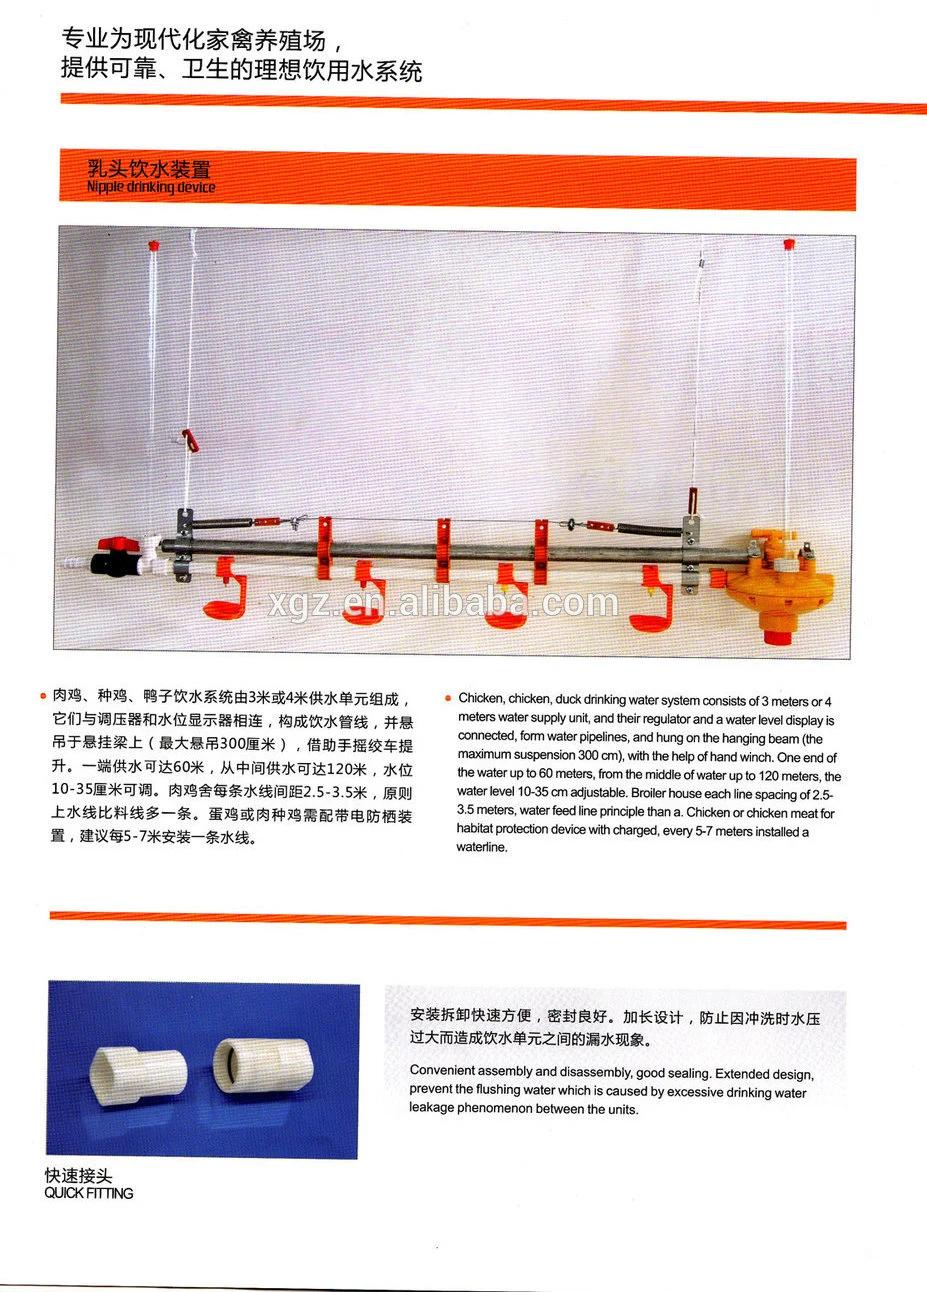 Free Rage Broiler Chicken Equipment From Xinguangzheng